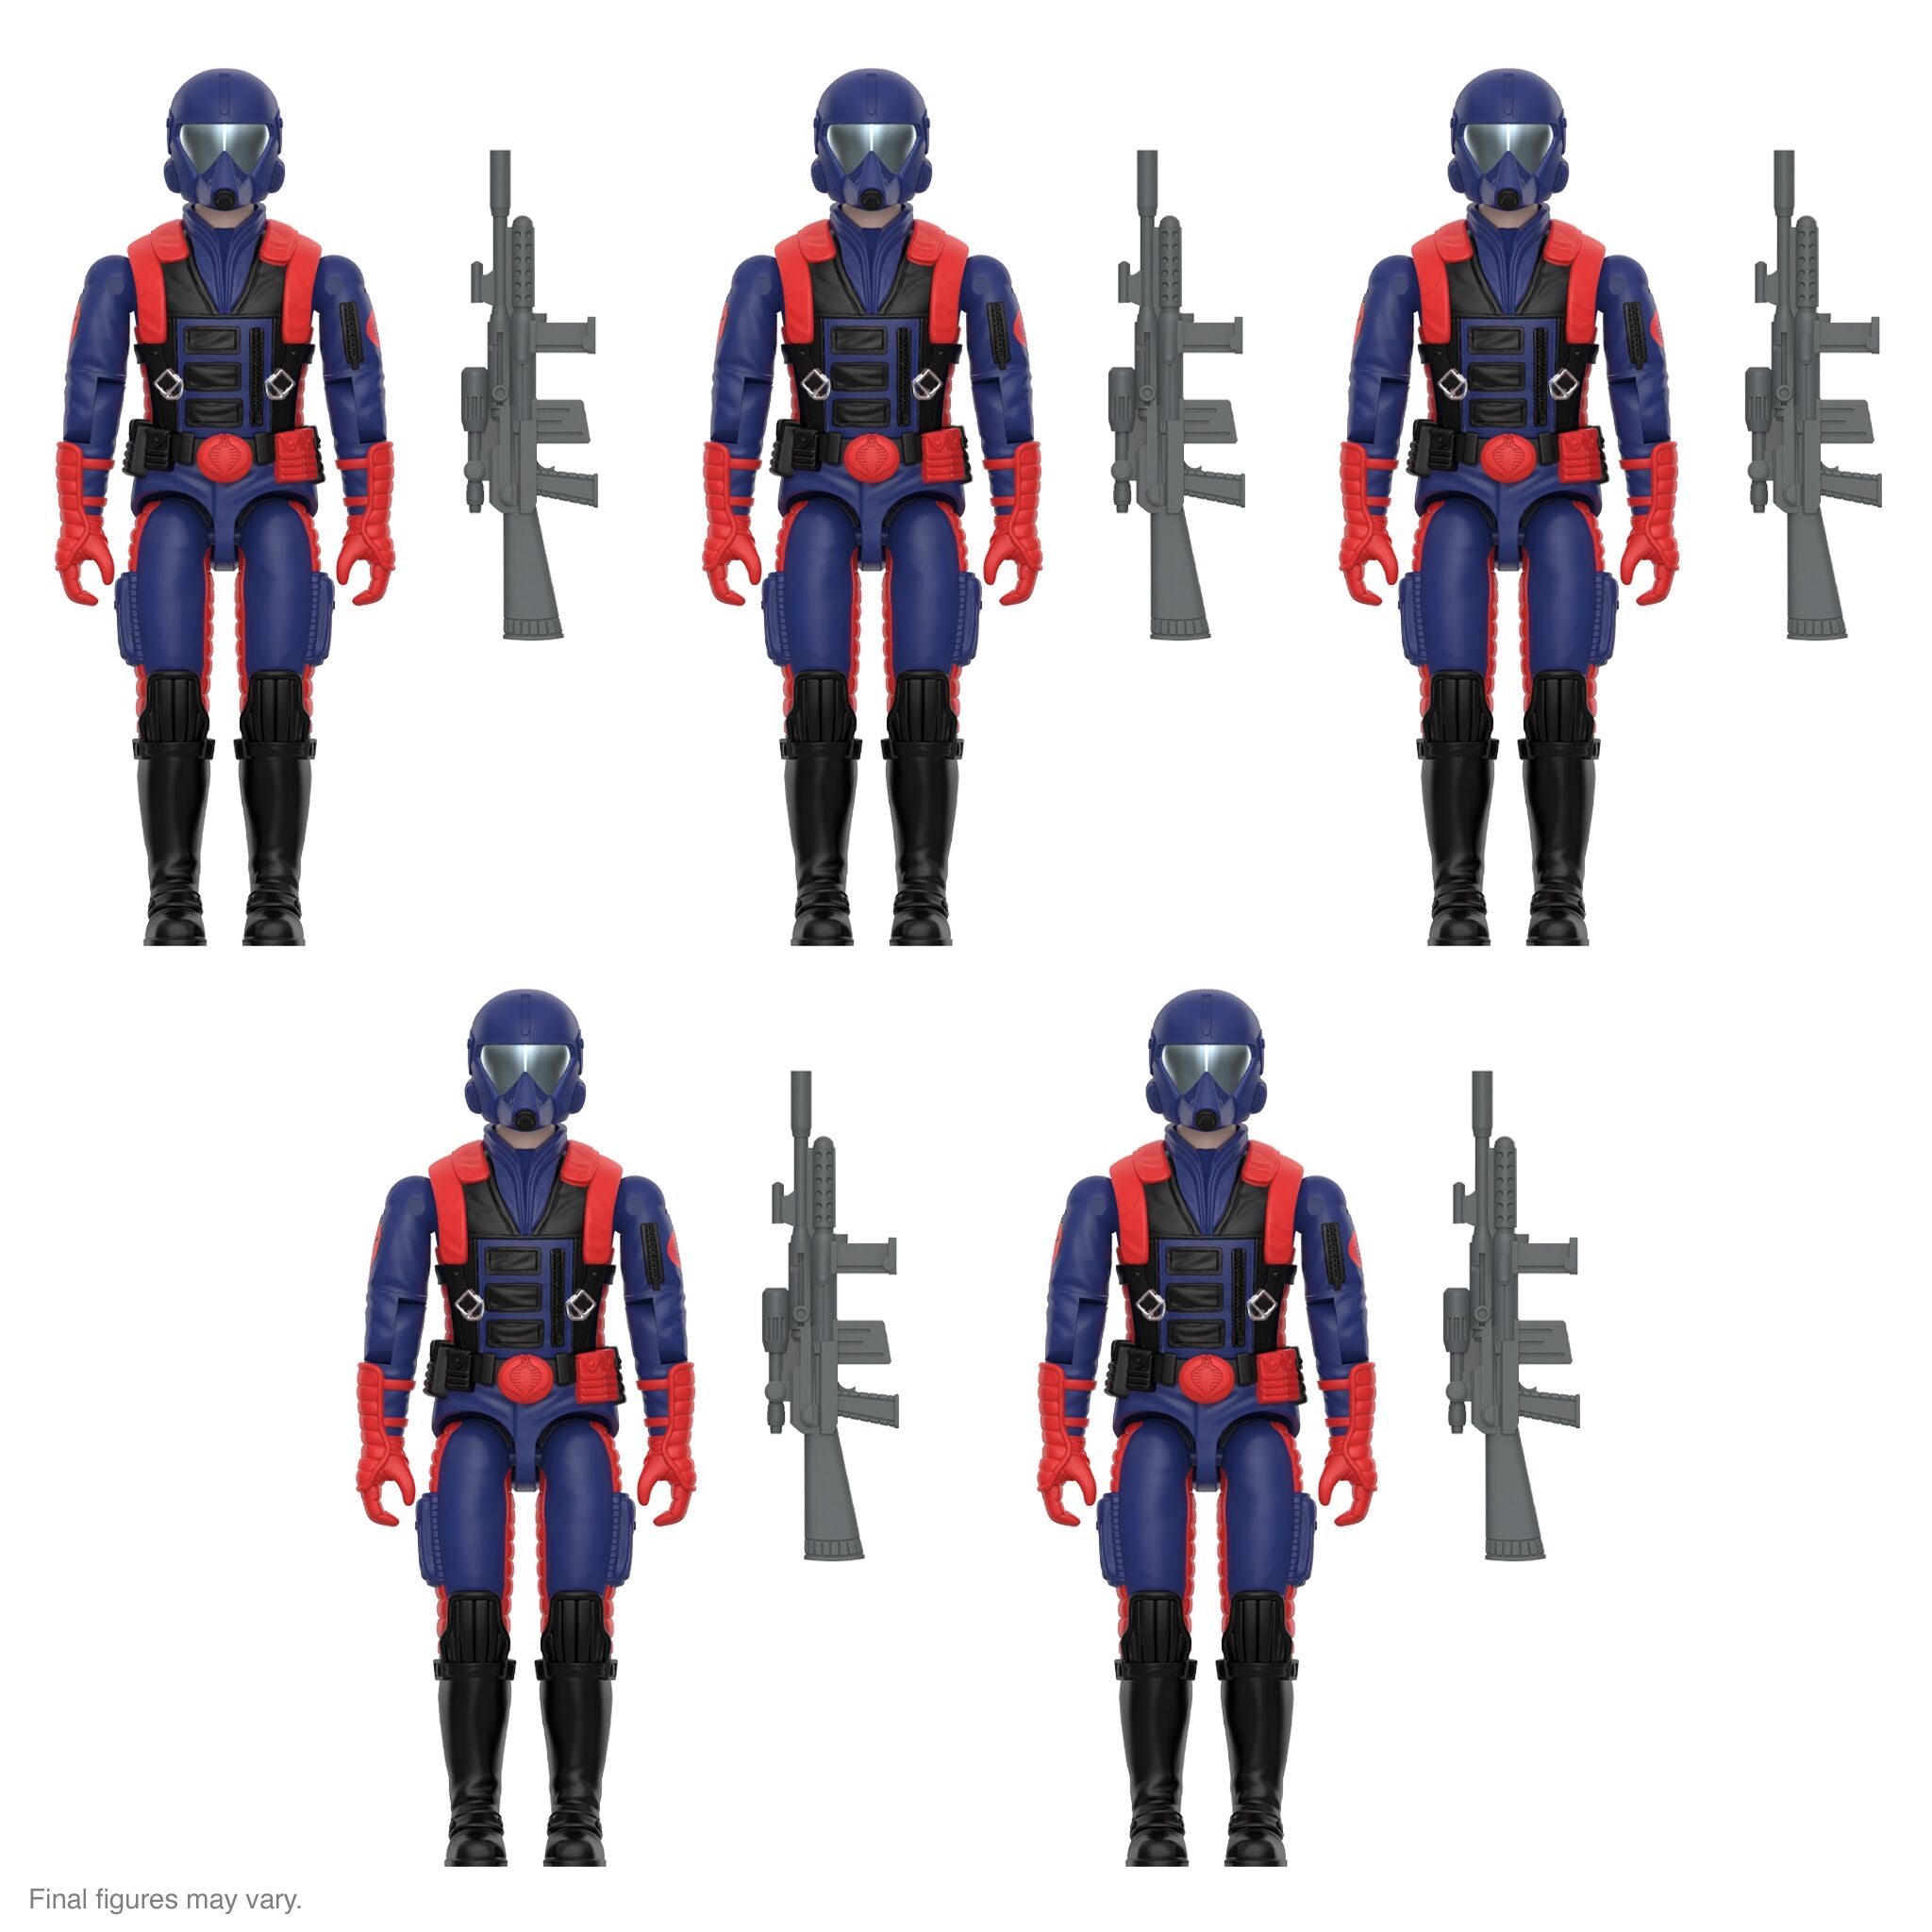 G.I. Joe ReAction Figures Cobra Mothership - 5PK Add-On (Cobra Viper Gunner O-Ring)